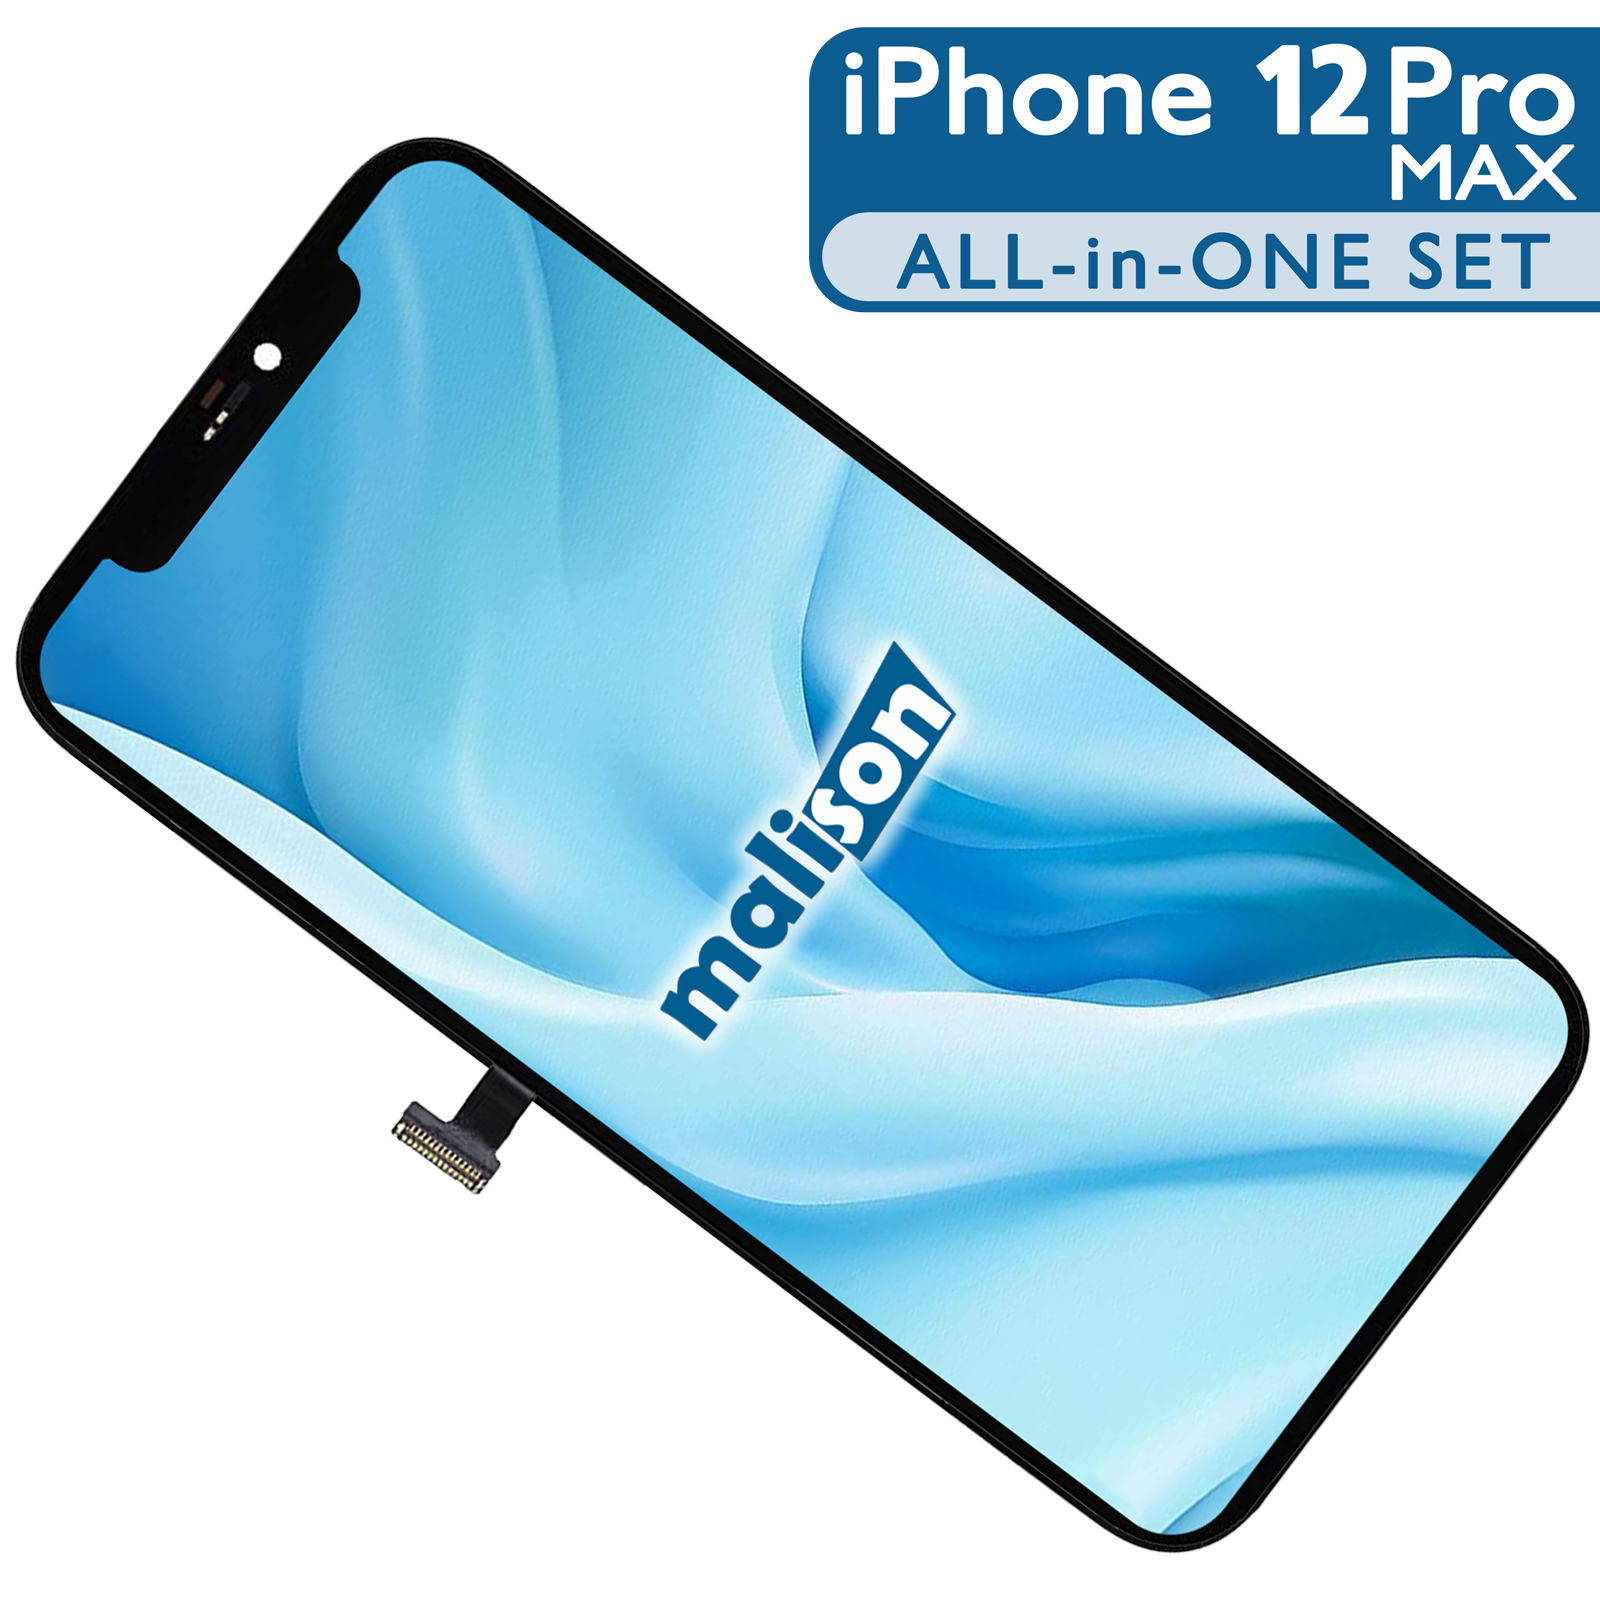 Display für iPhone 12 Pro Max in PROFESSIONAL-Qualität